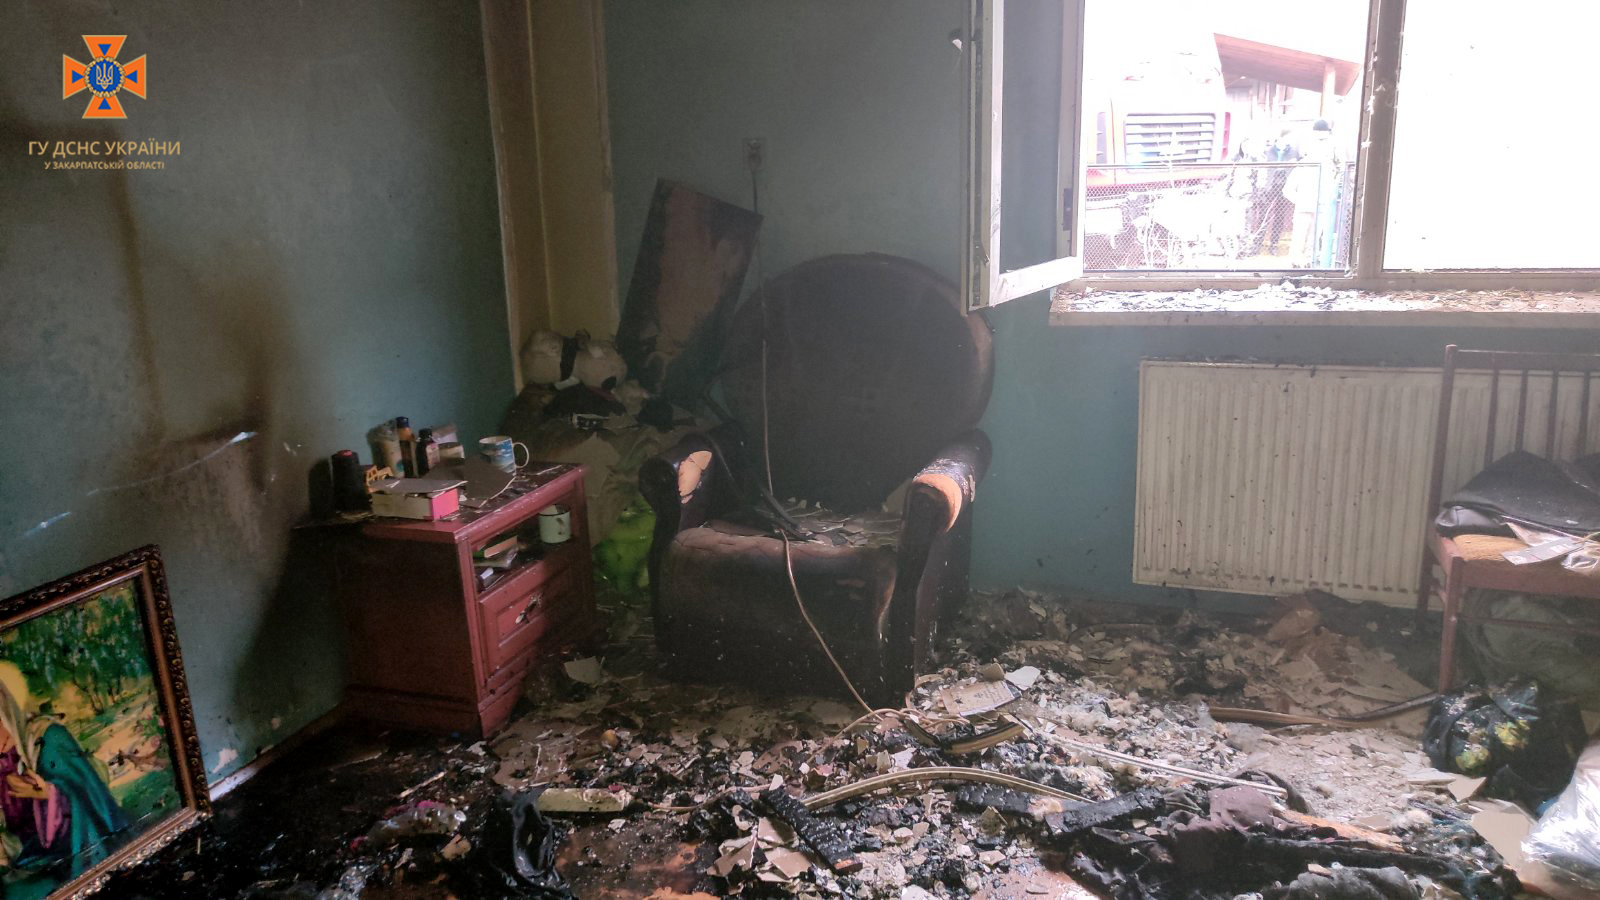 29 грудня у селищі Кобилецька Поляна Рахівського району виникла пожежа в житловому будинку, де самотньо мешкав 28-річний чоловік. 